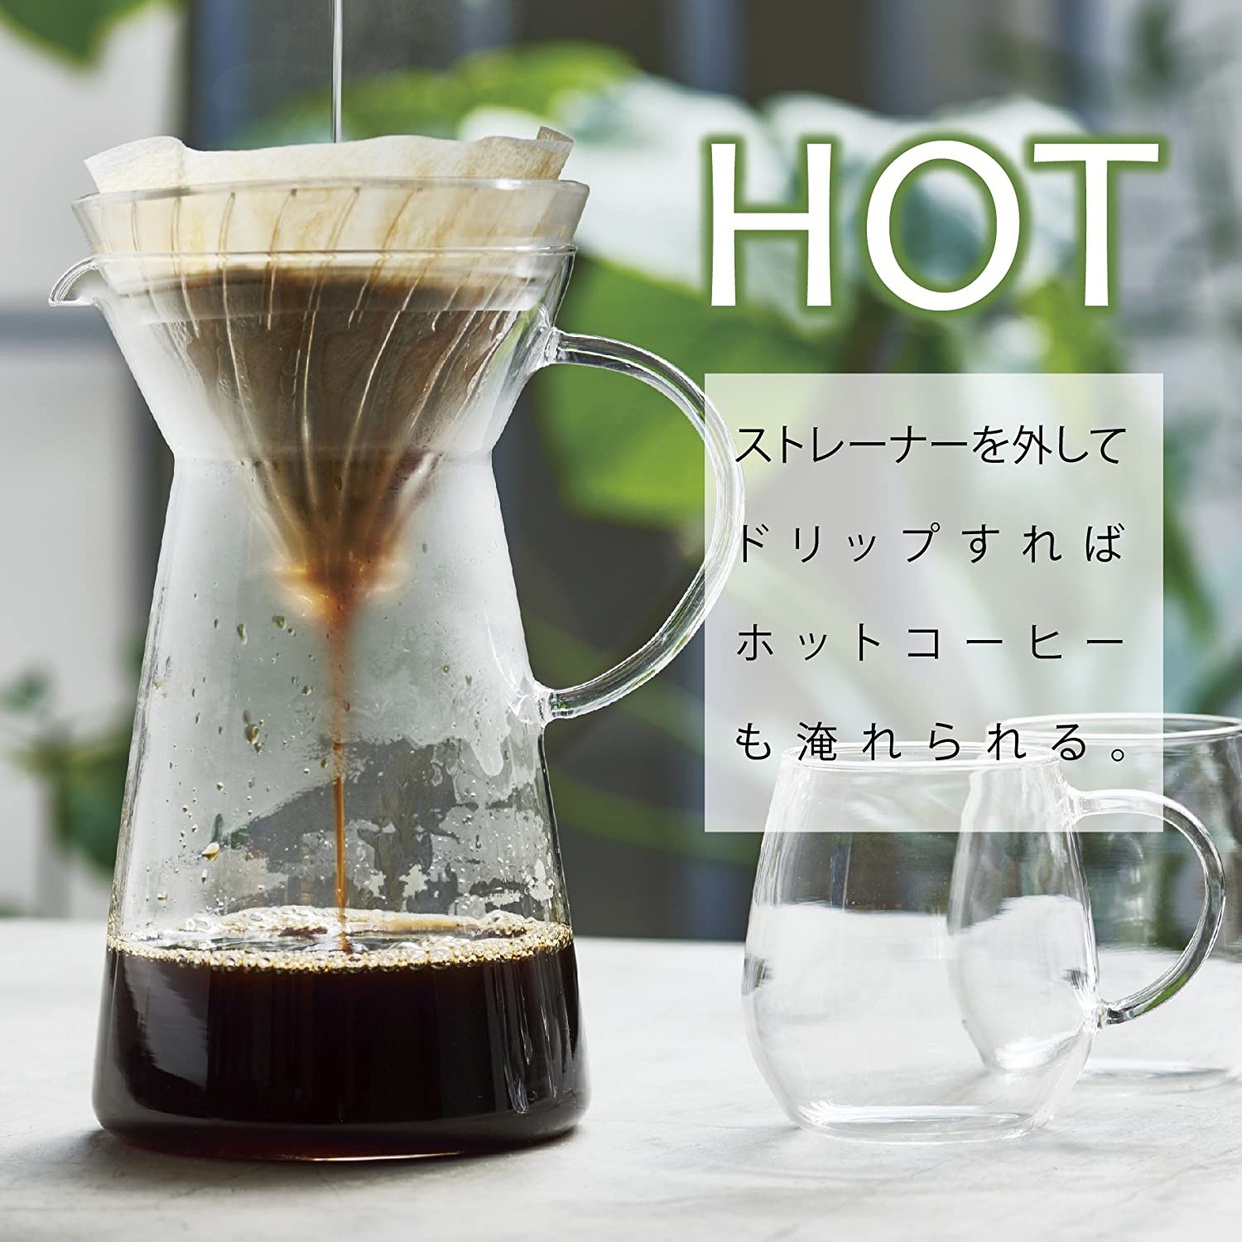 HARIO(ハリオ) マルチ V60 グラス アイスコーヒー メーカー VIG-02Tの商品画像サムネ4 